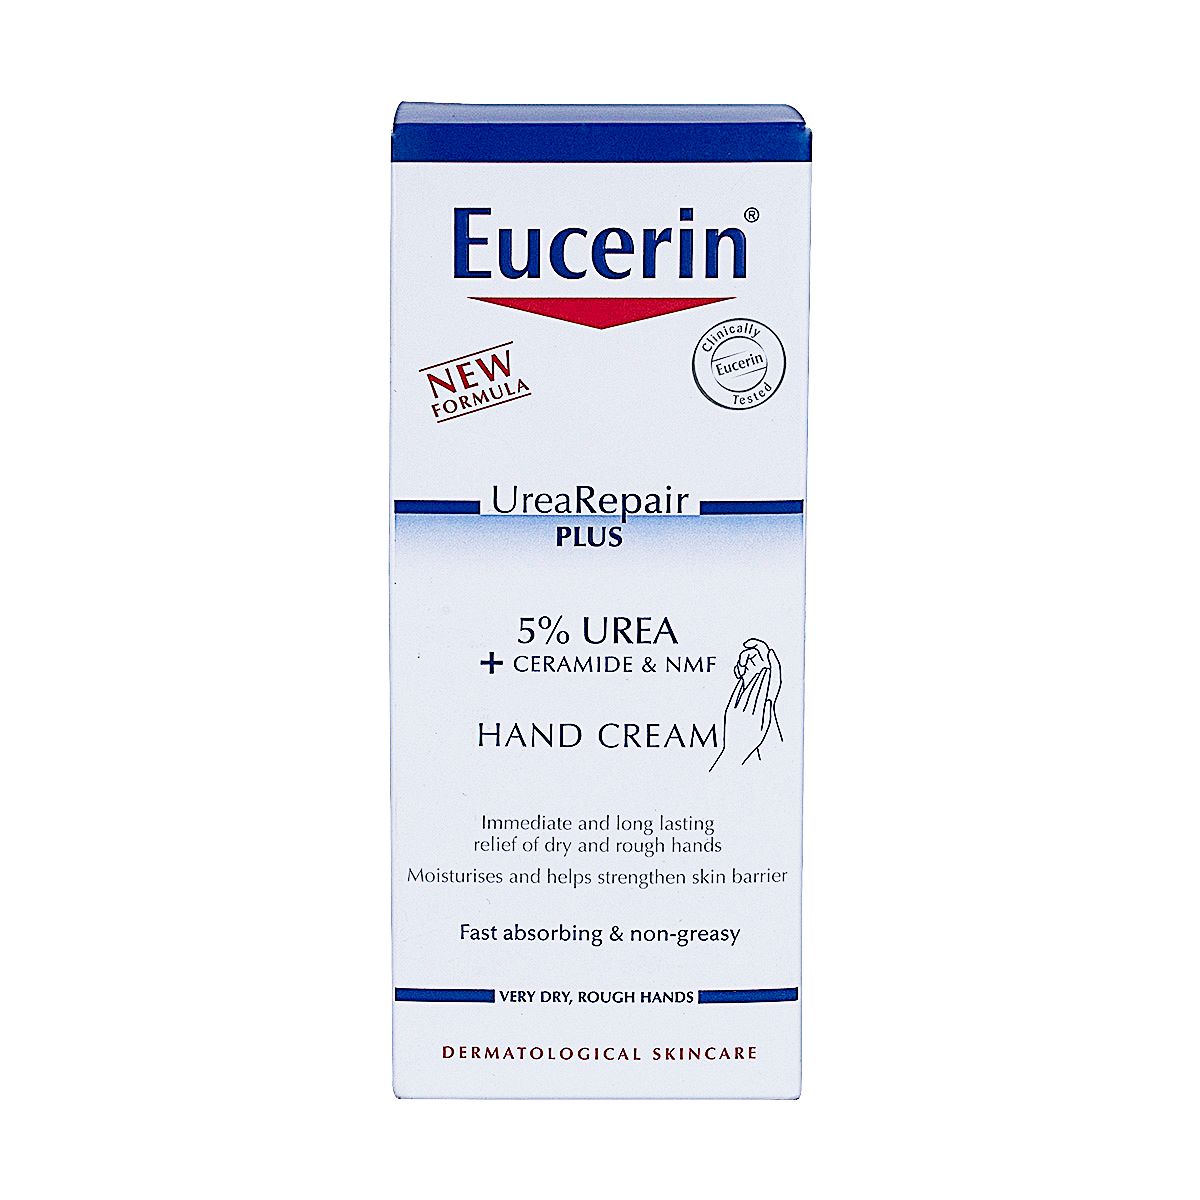 Urea Repair Plus 5% Urea Hand Cream